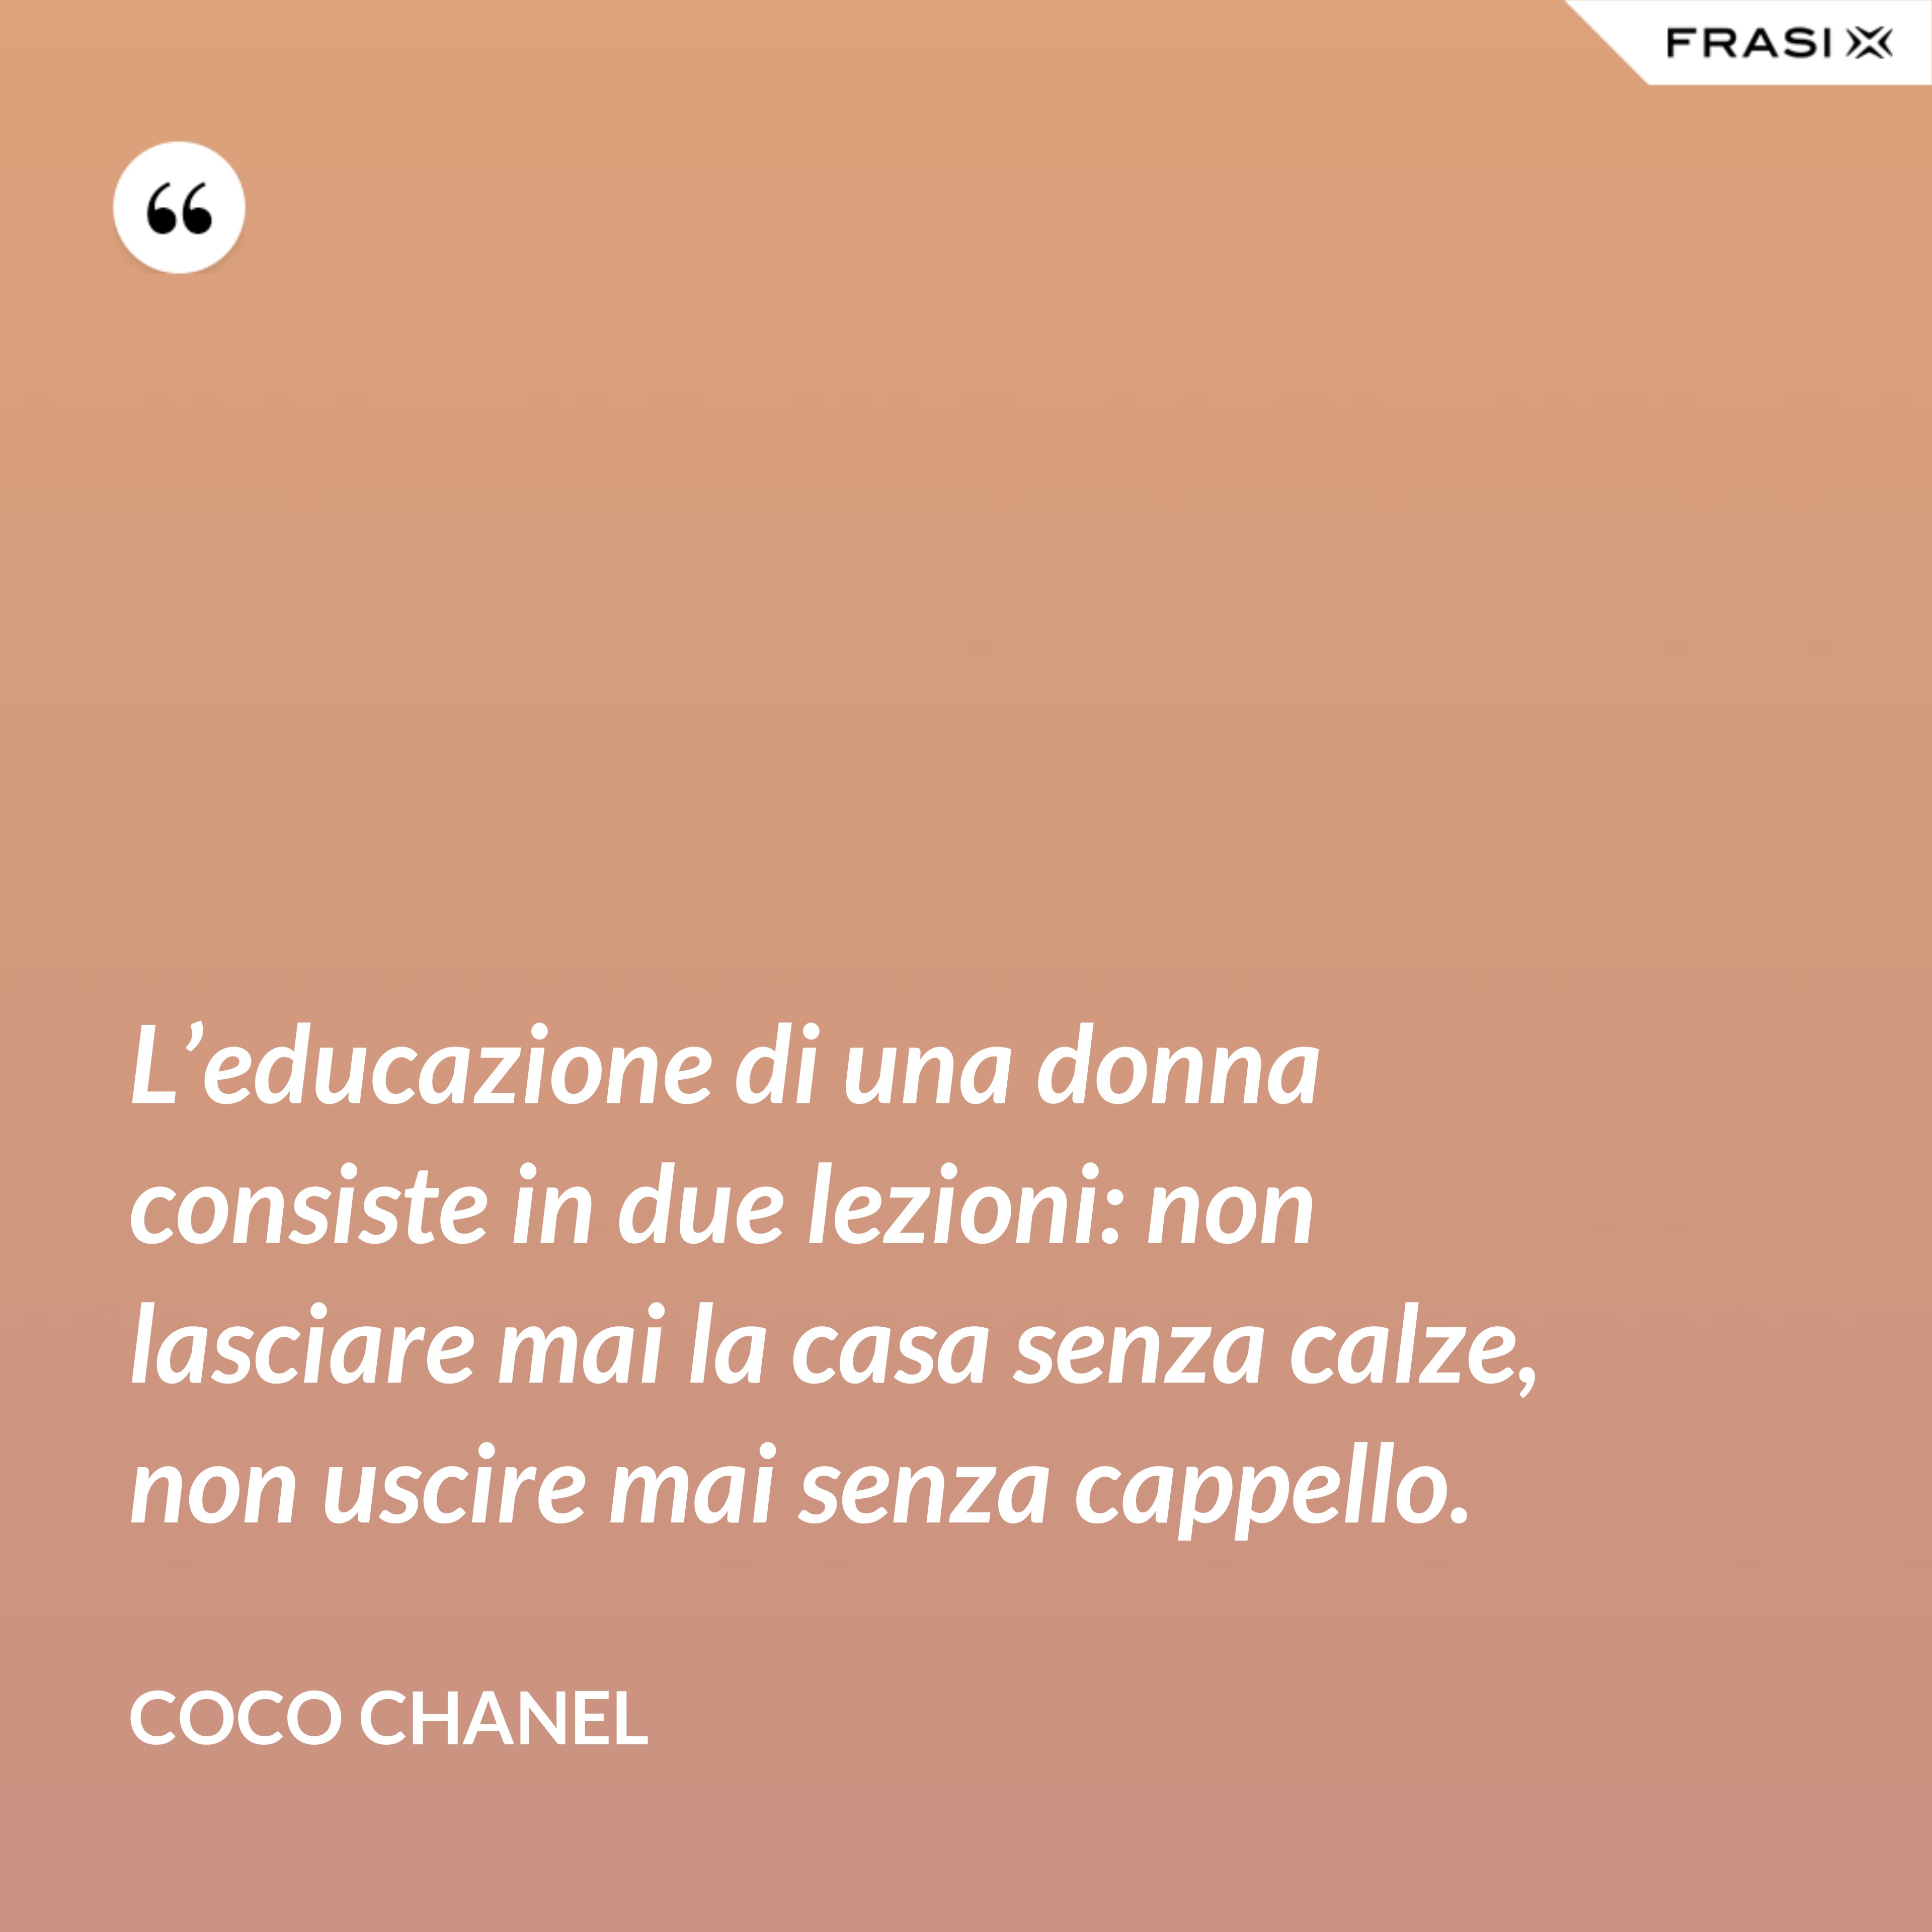 L’educazione di una donna consiste in due lezioni: non lasciare mai la casa senza calze, non uscire mai senza cappello. - Coco Chanel